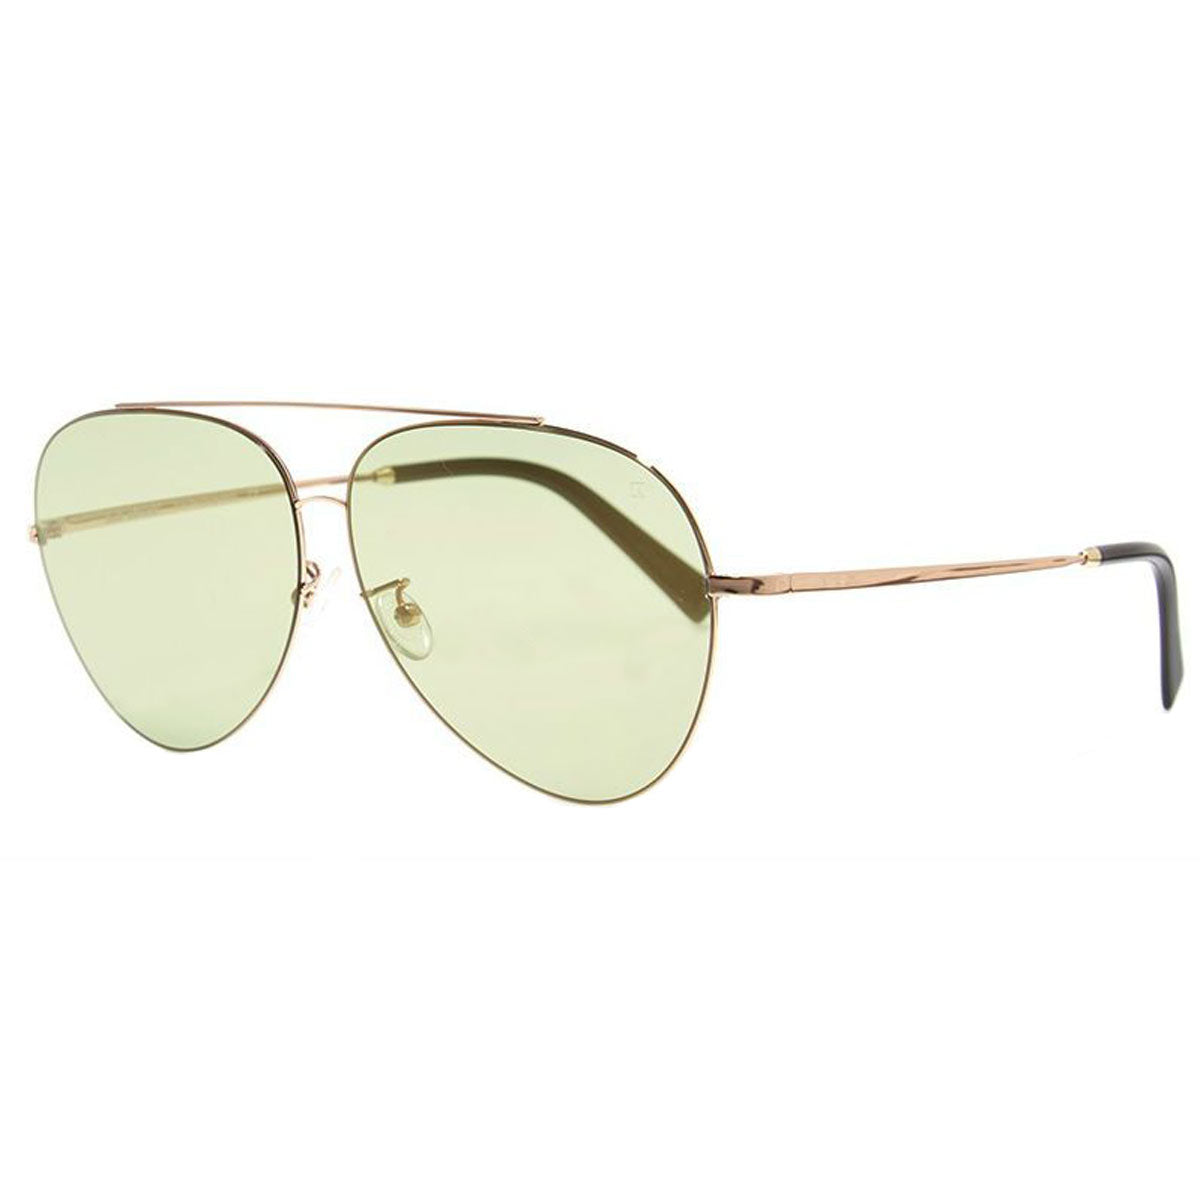 Bob Sdrunk Women's Sunglasses - Dylan Gold Frame Green Lens / DYLAN-102-64-11-150